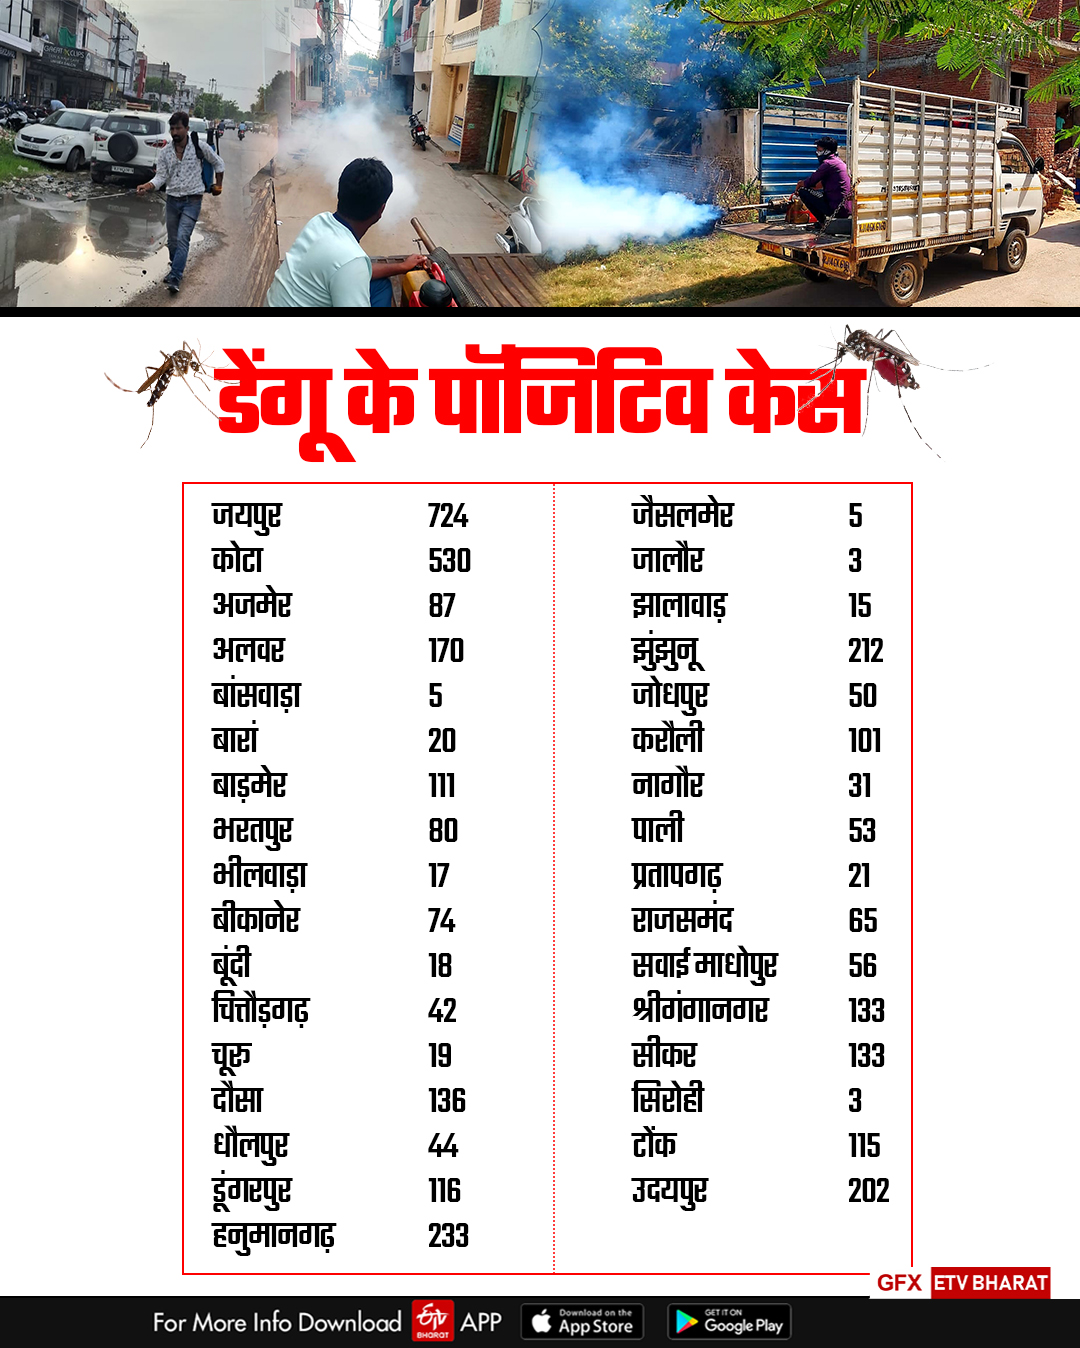 Dengue Cases in Rajasthan